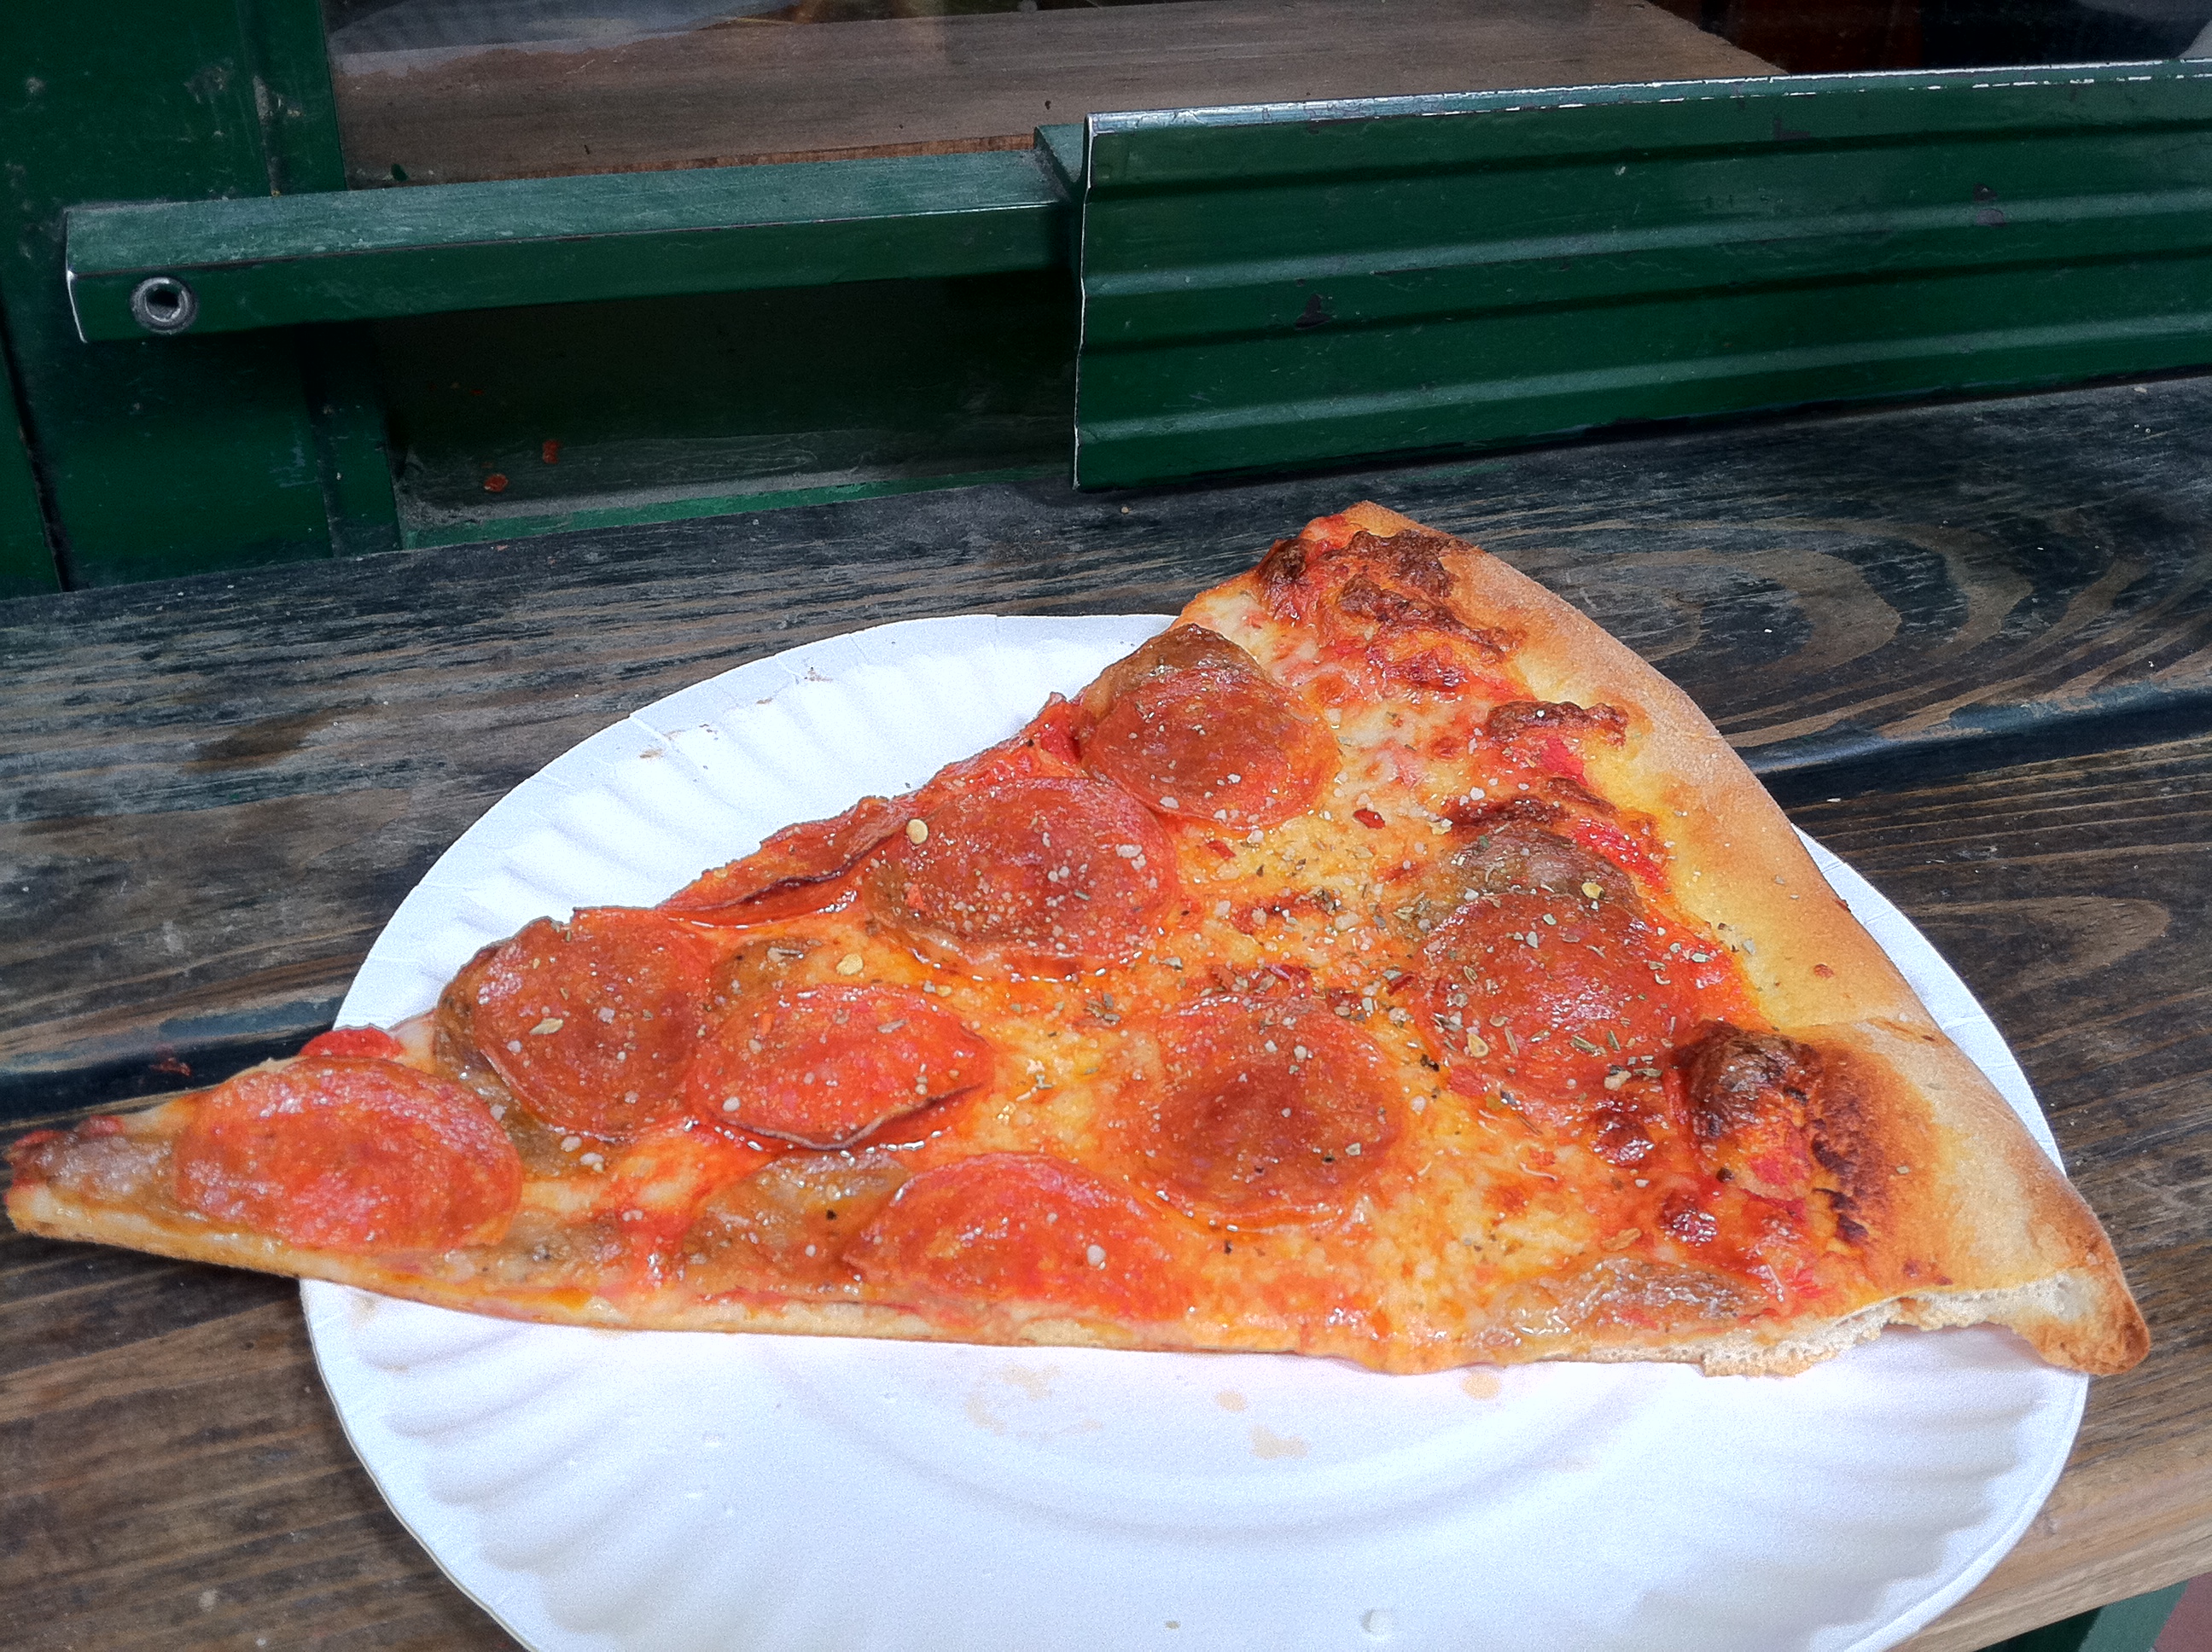 A slice of NY pizza heaven